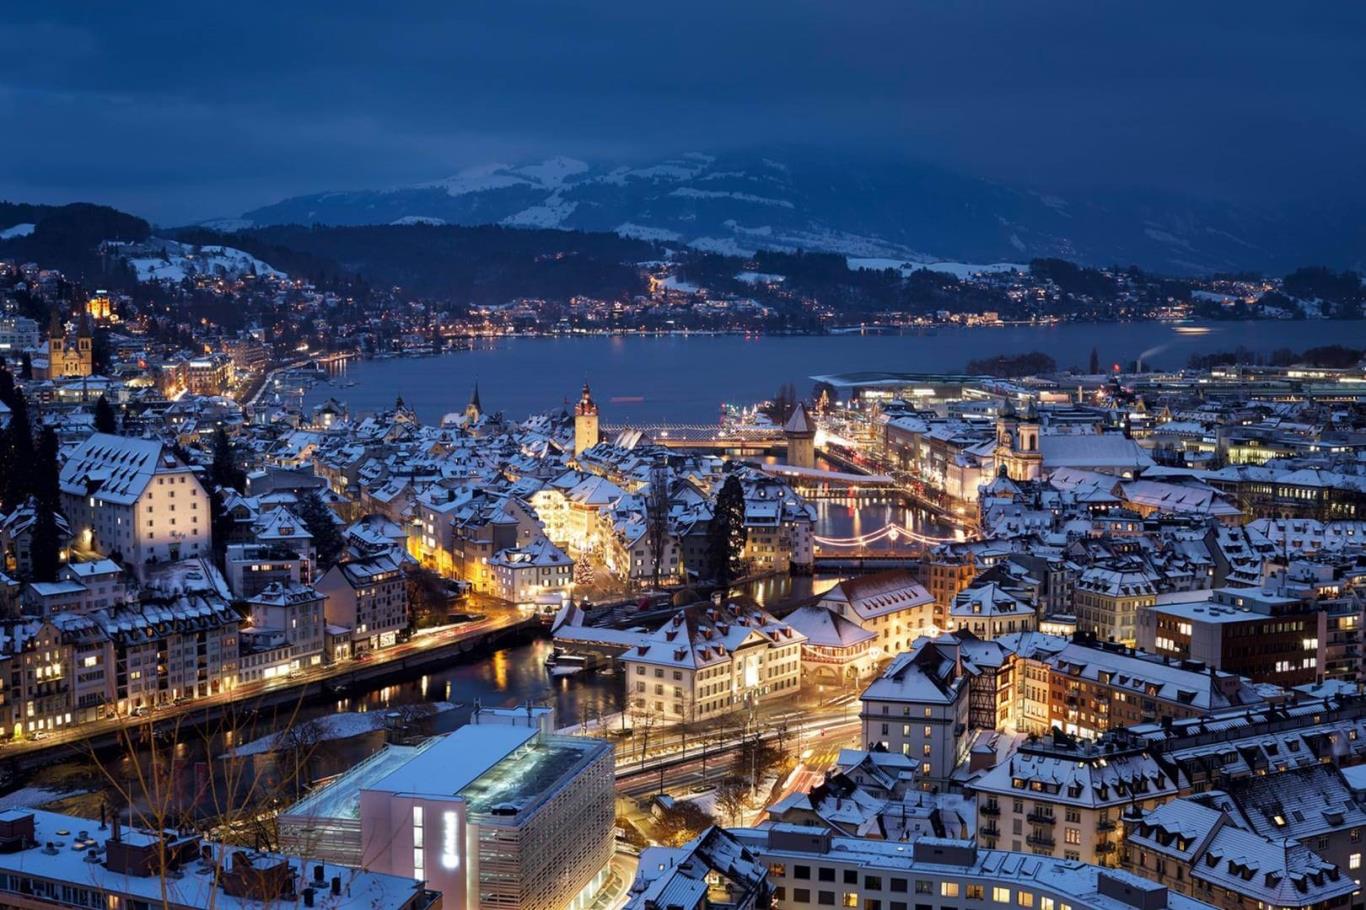 Thụy Sĩ, lãng mạn cảnh sắc mùa đông tựa tranh vẽ | VIETRAVEL